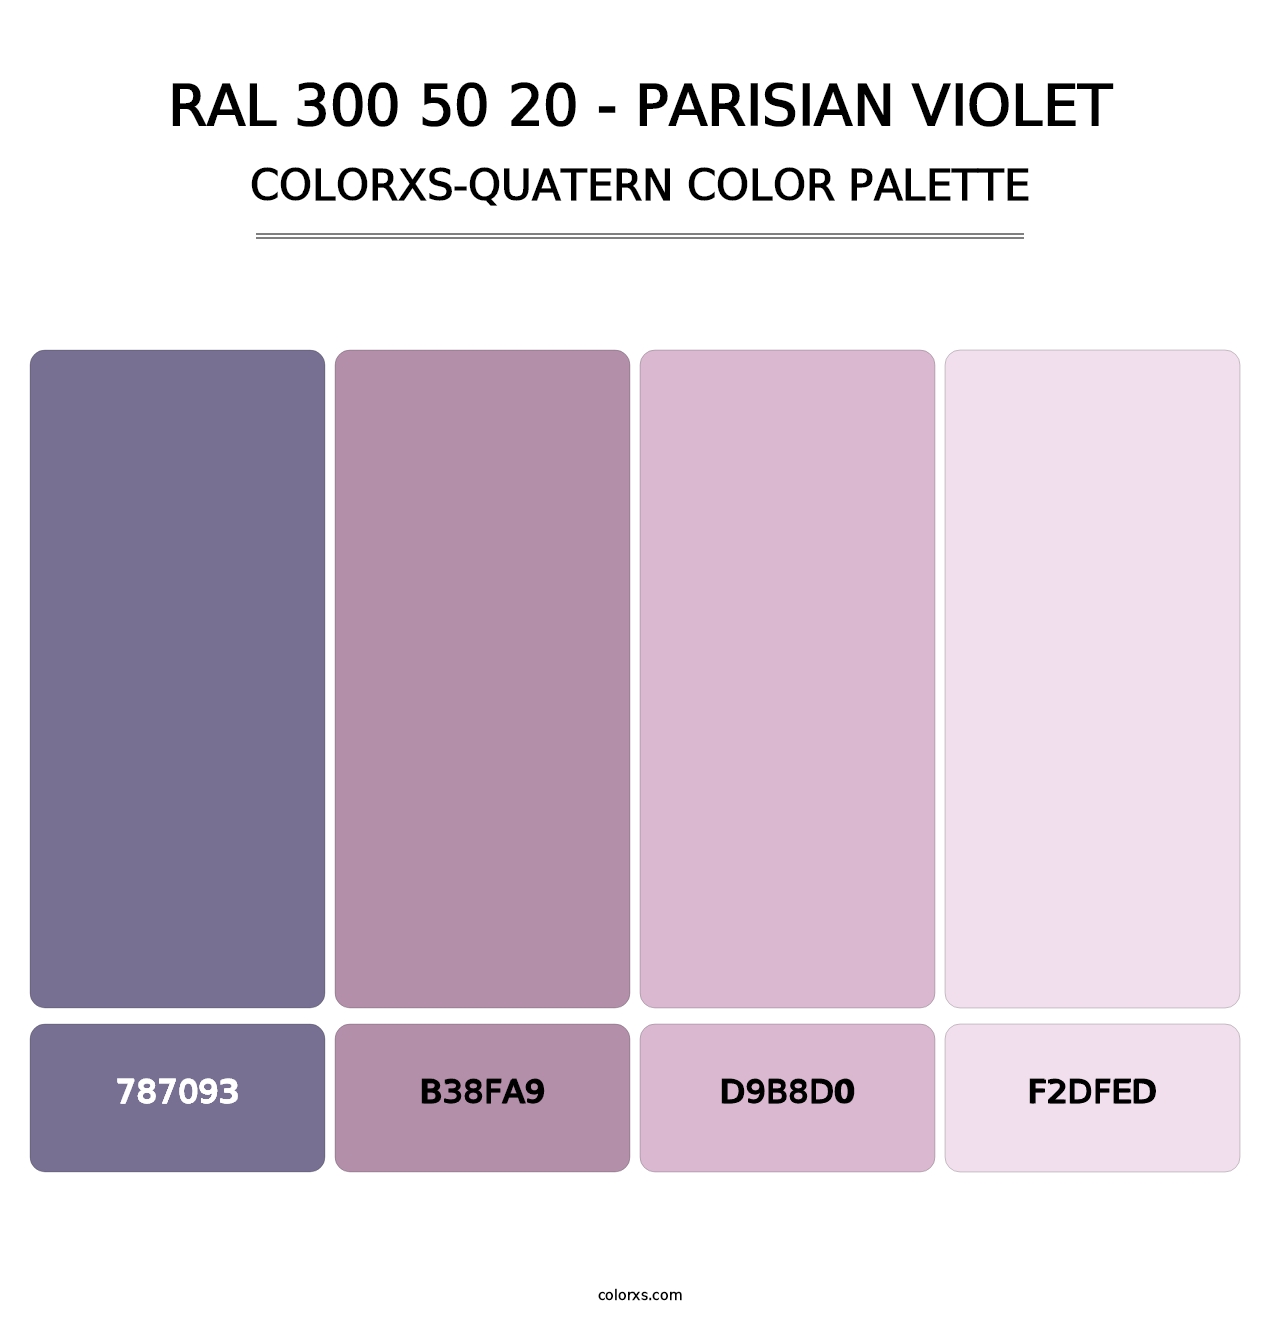 RAL 300 50 20 - Parisian Violet - Colorxs Quatern Palette